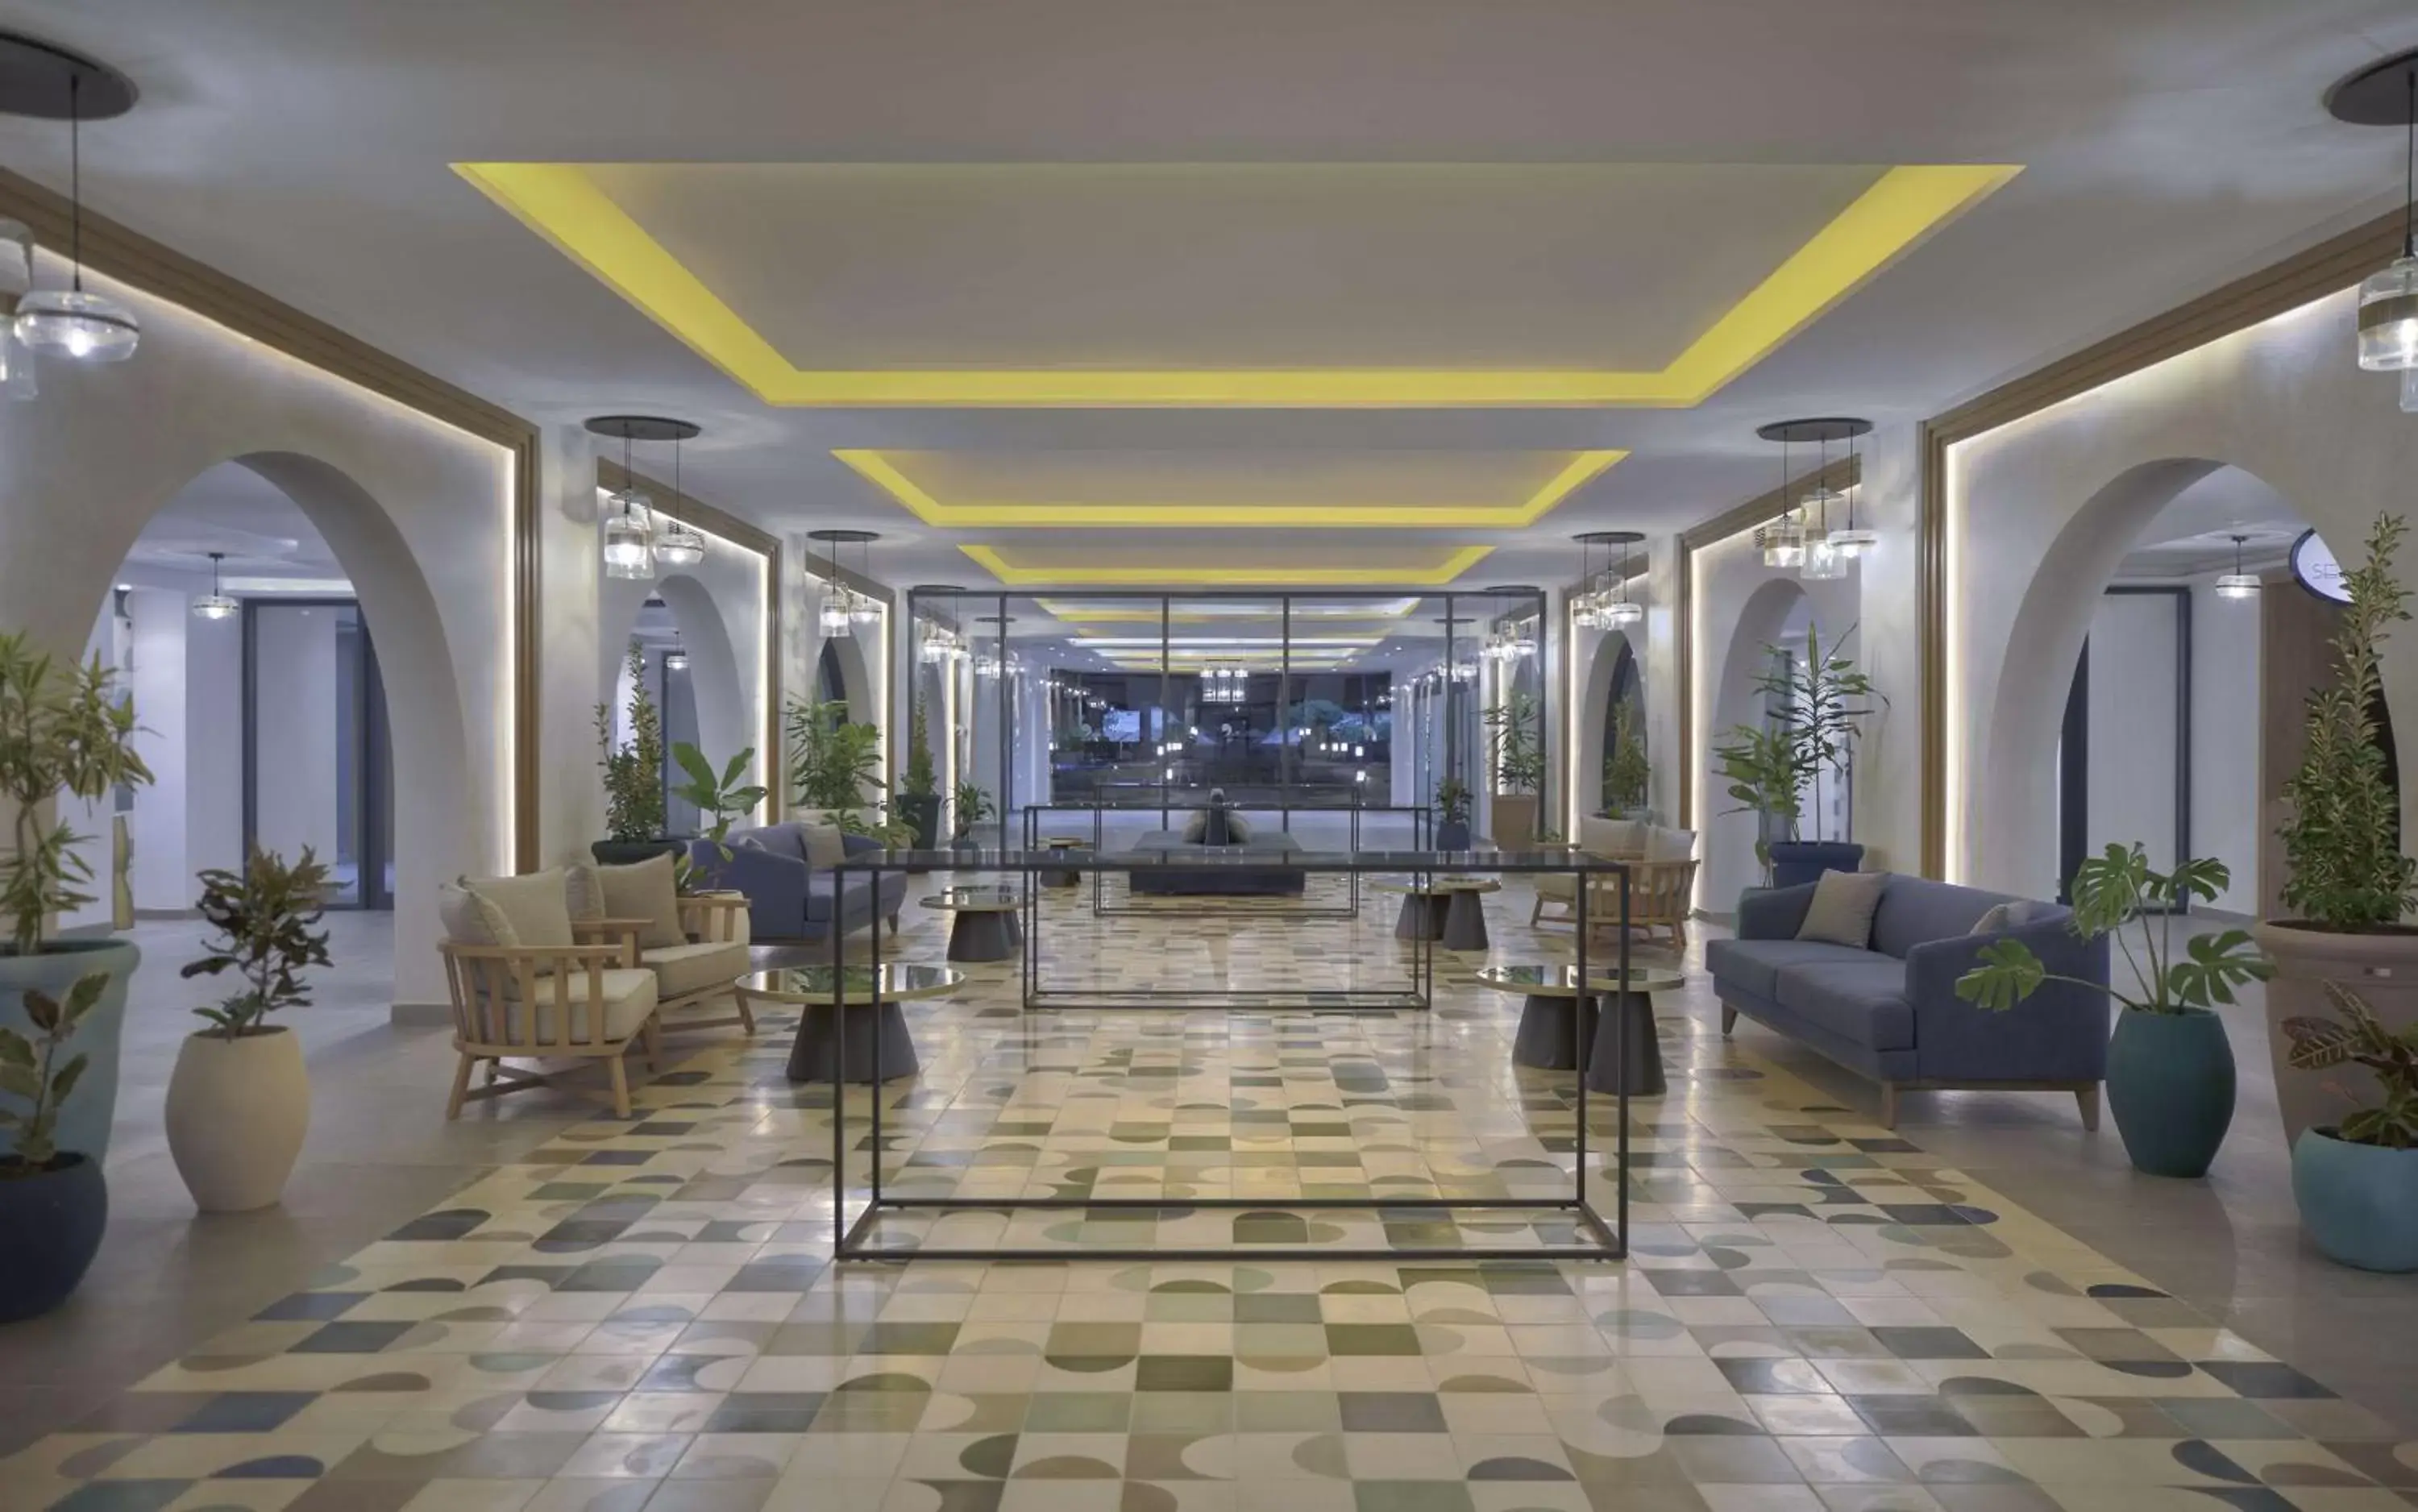 Lobby or reception, Lobby/Reception in Hilton Skanes Monastir Beach Resort